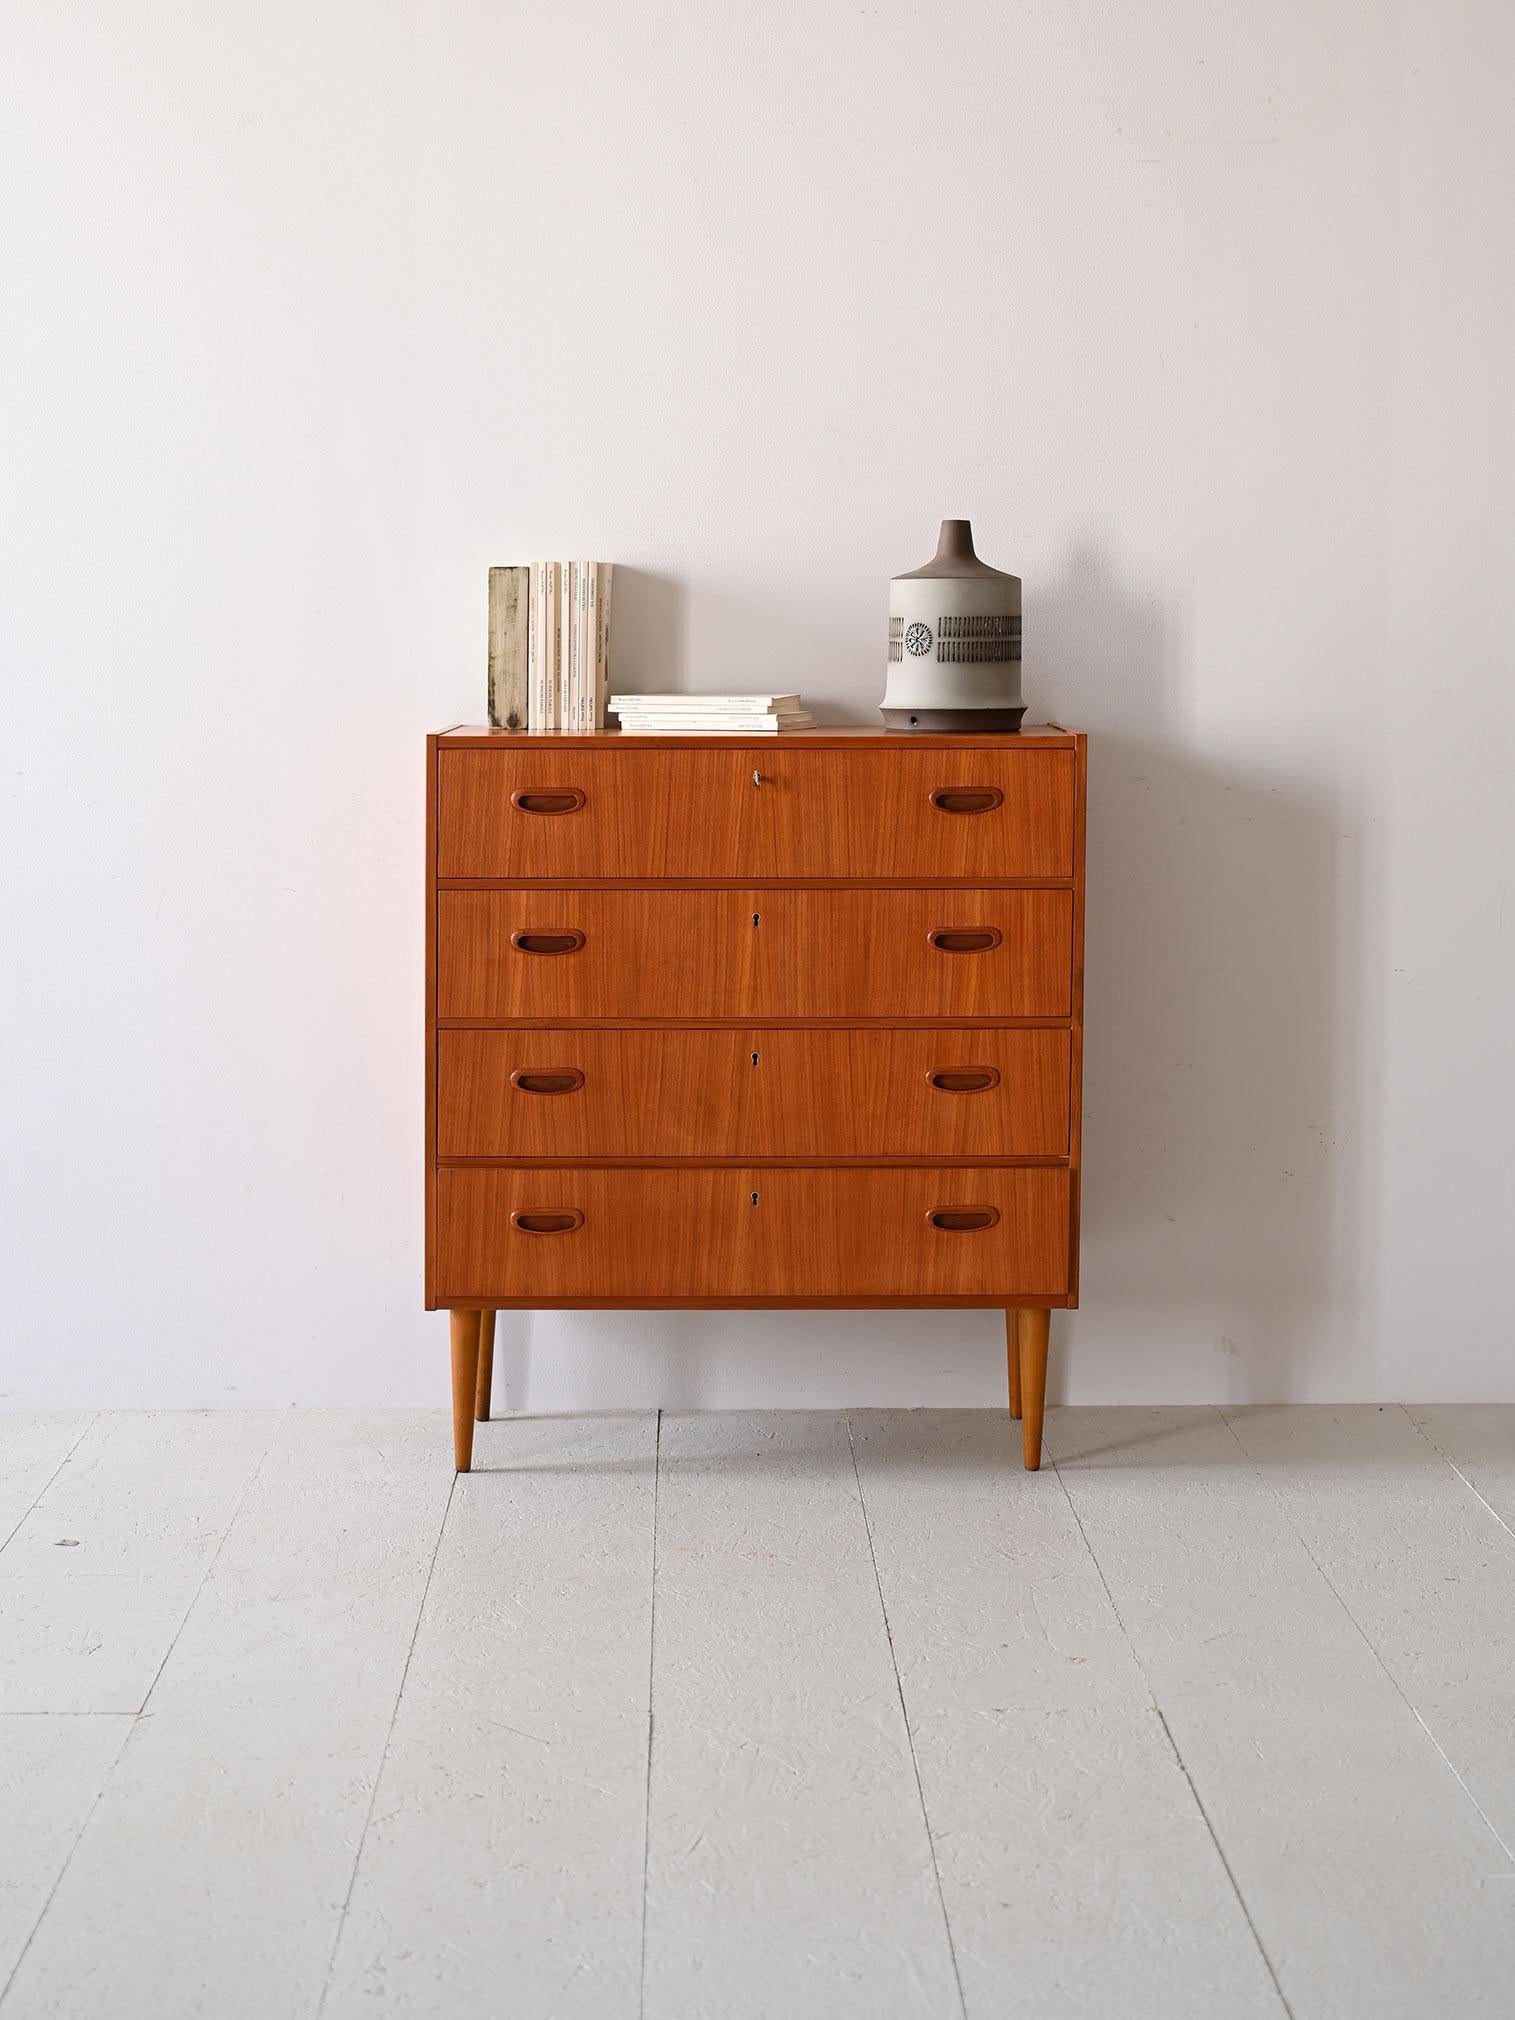 Questa cassettiera scandinava degli anni '50, realizzata in teak, è un esemplare di sobria eleganza. Il design lineare, esaltato dalle maniglie incassate, rispecchia l'essenza del minimalismo nordico. L'artigianato dell'epoca si rivela nella scelta